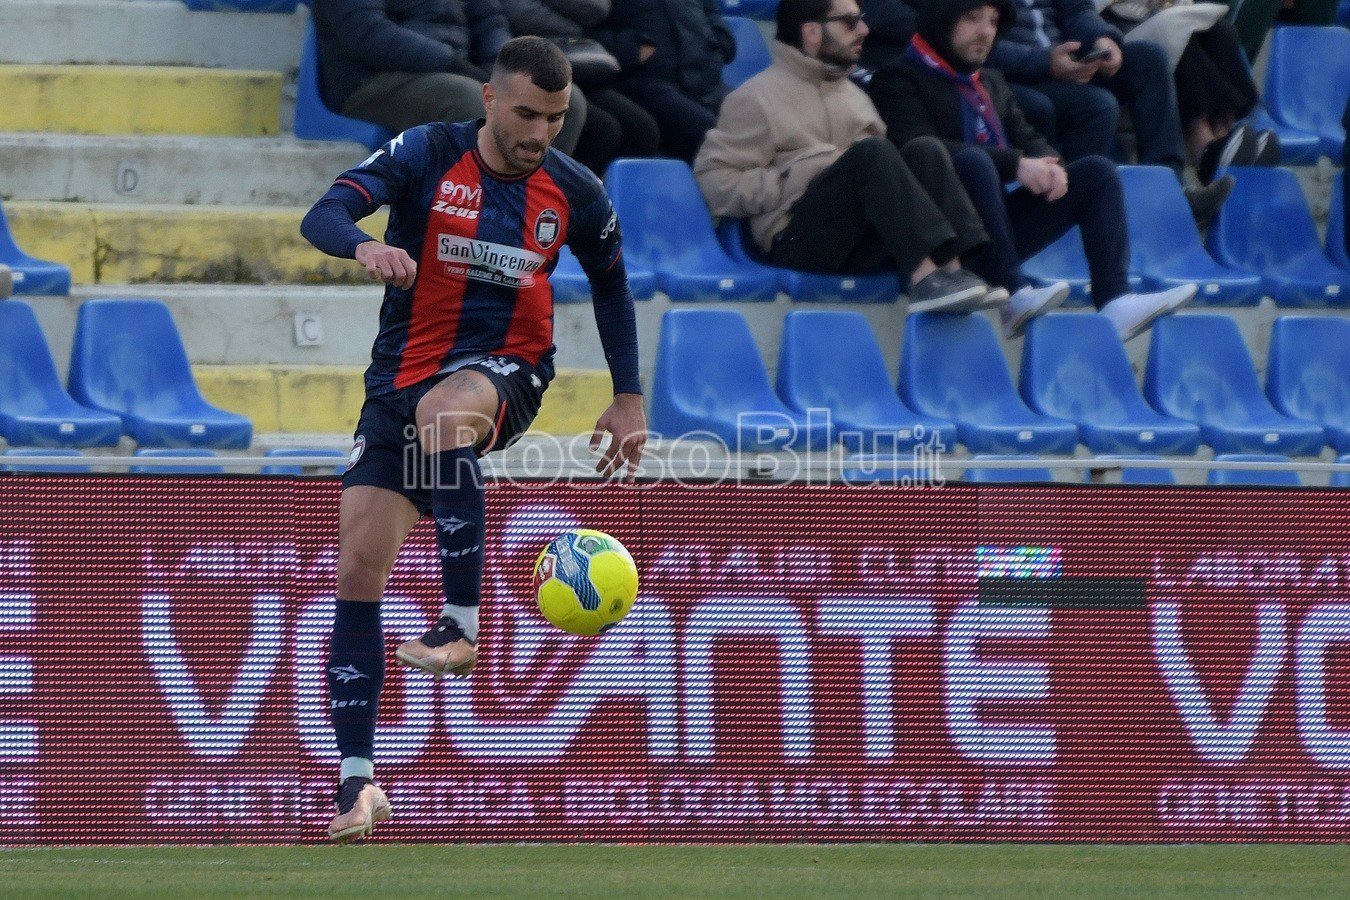 Crotone vs Potenza 0-0 - Serie C 2022-2023 - Rosito Andrea - (29 1 2023) - Crialese Carlo